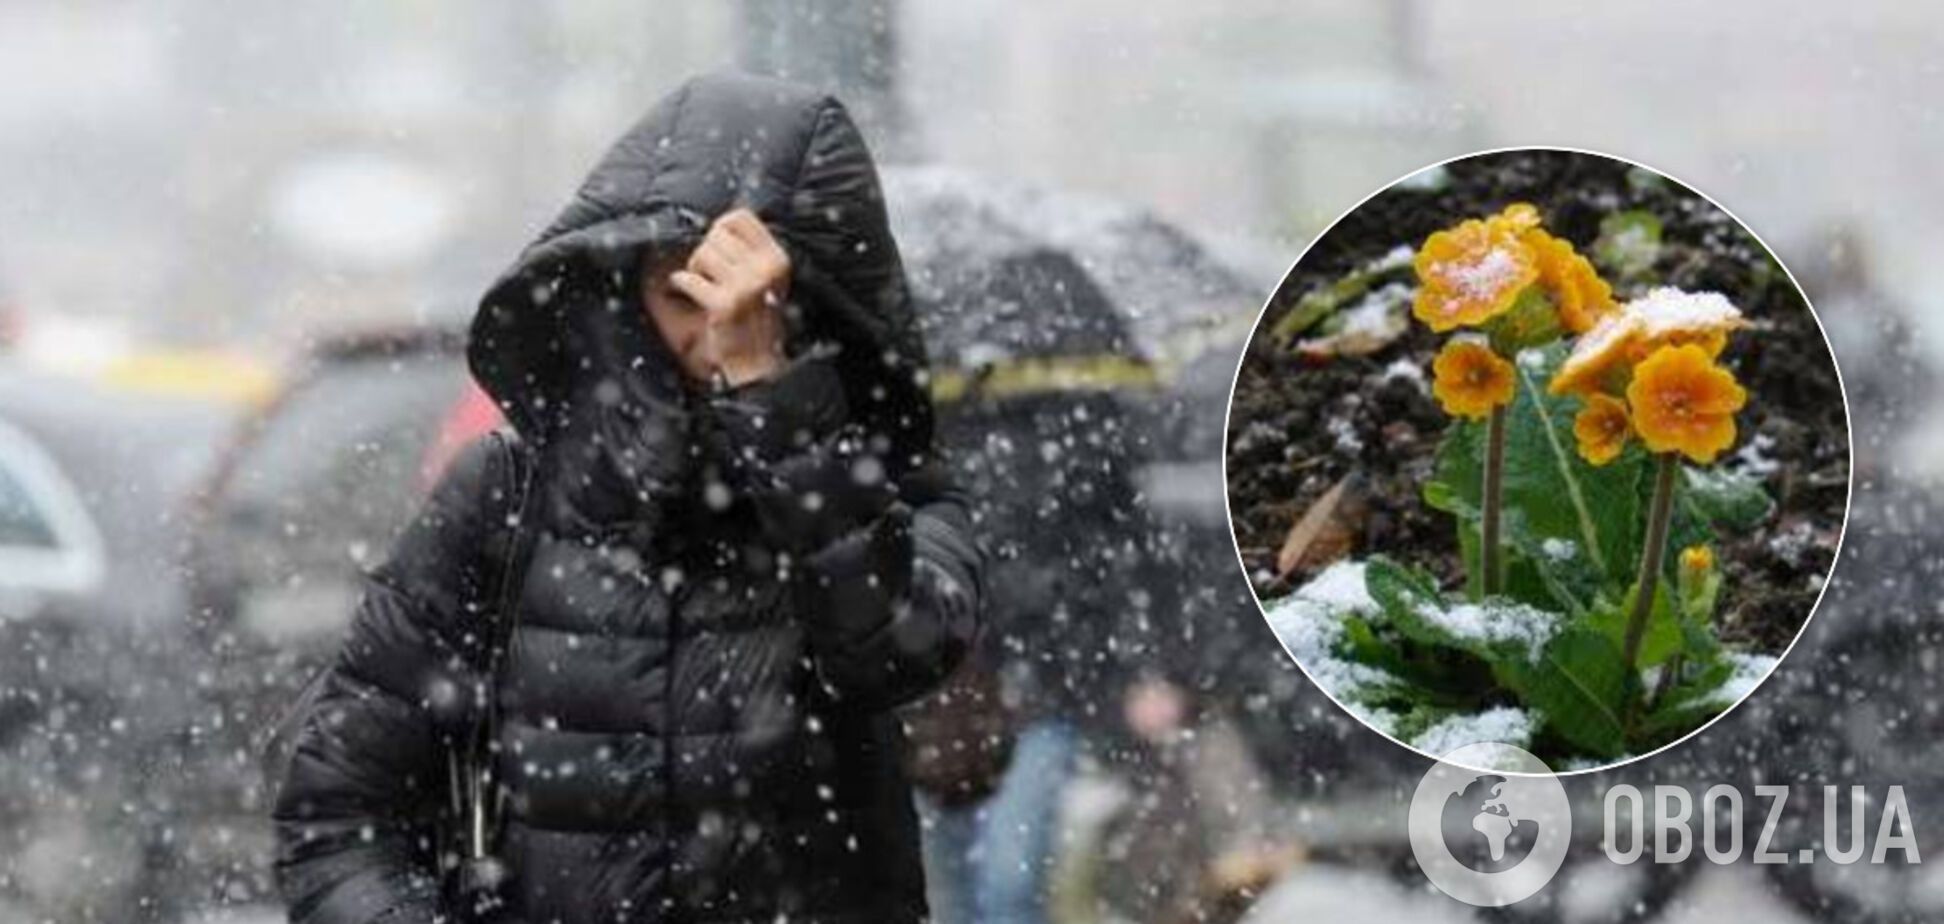 Синоптикиня уточнила прогноз погоди на вихідні в Україні: різко похолодає